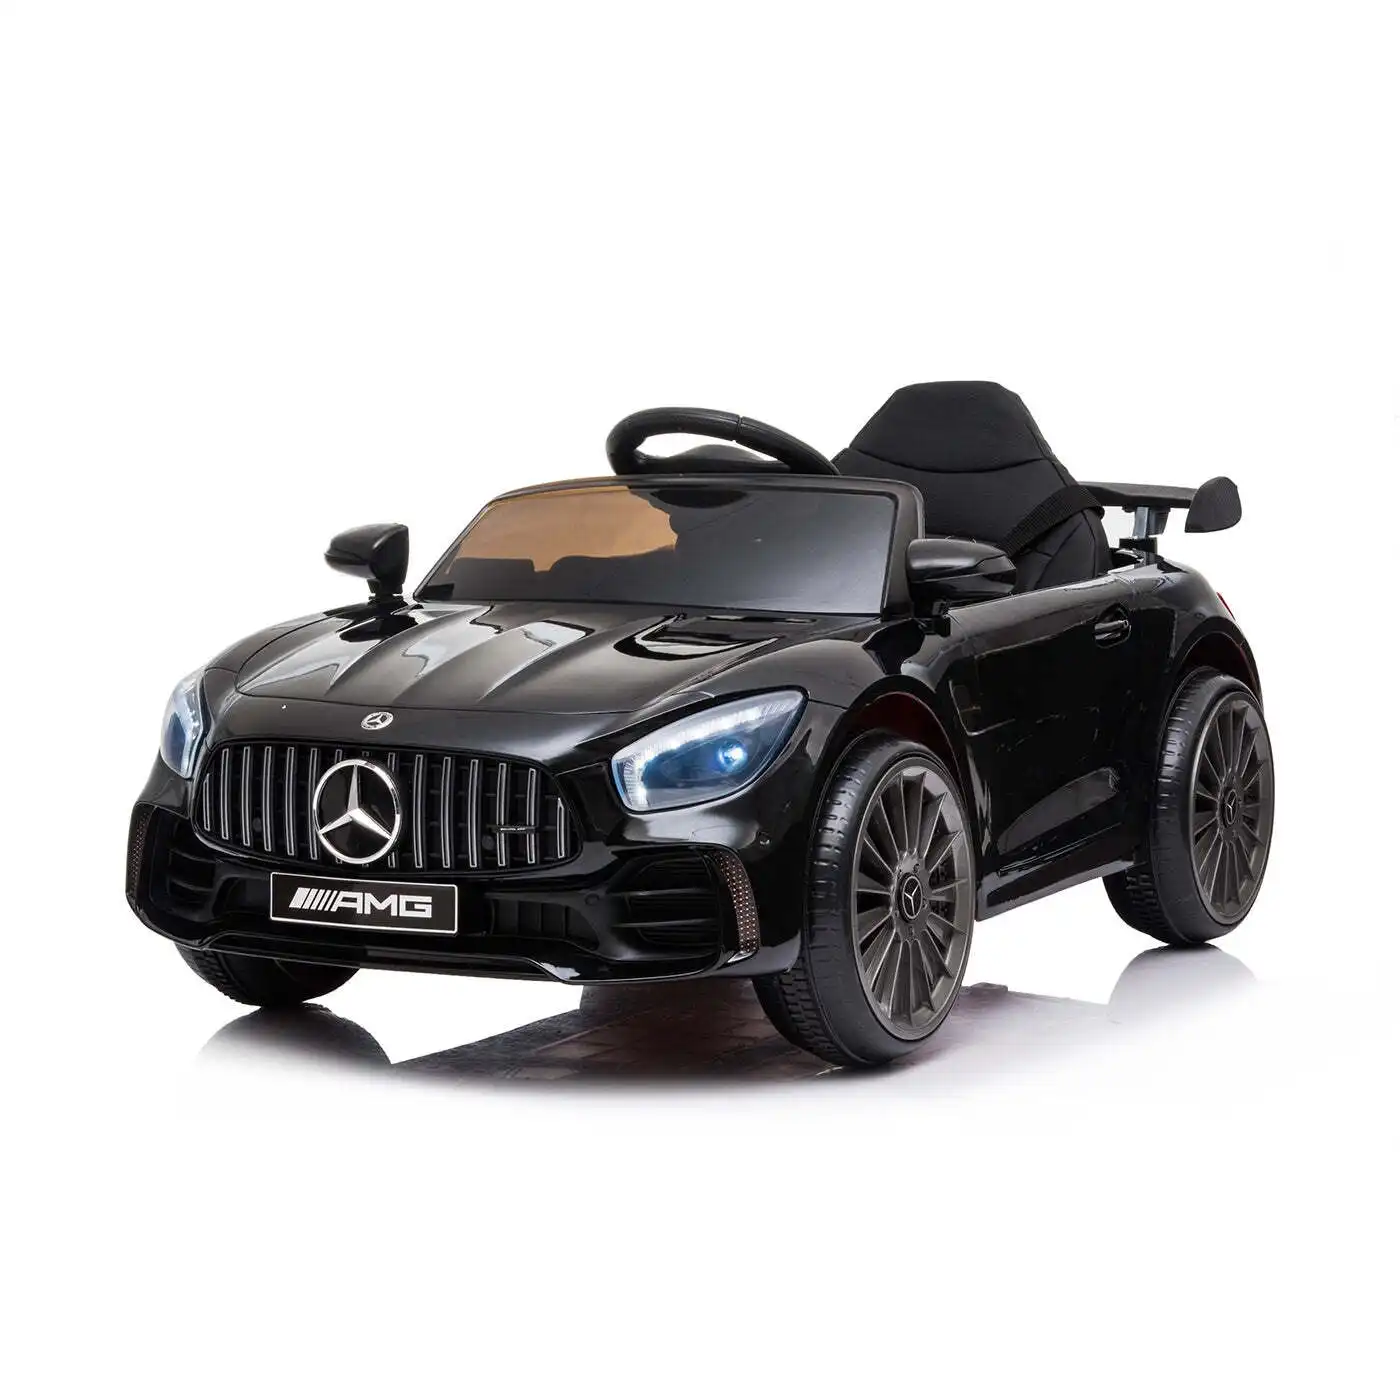 Licensed Mercedes GTR Replica Ride-on Car for Children - Steer & Drive